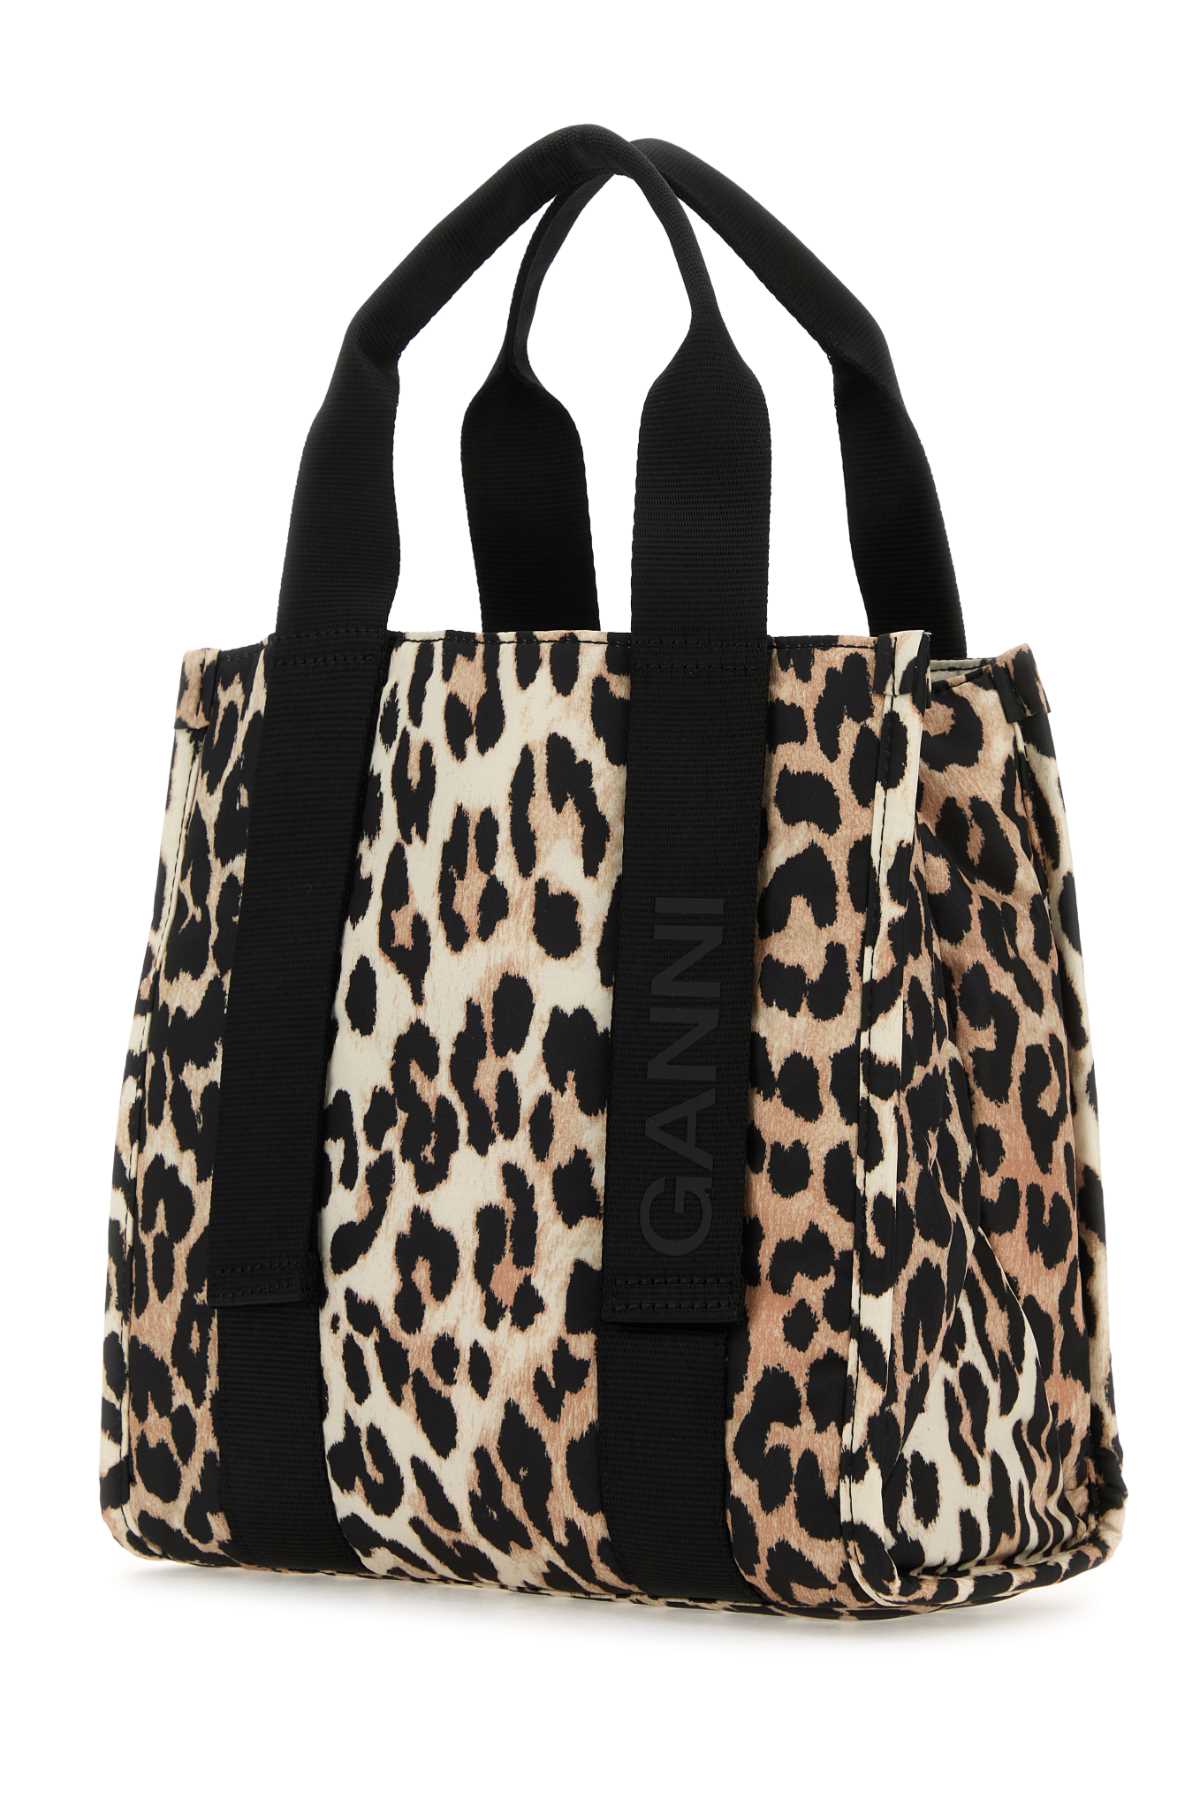 Ganni Printed Polyester Medium Handbag In Leopard